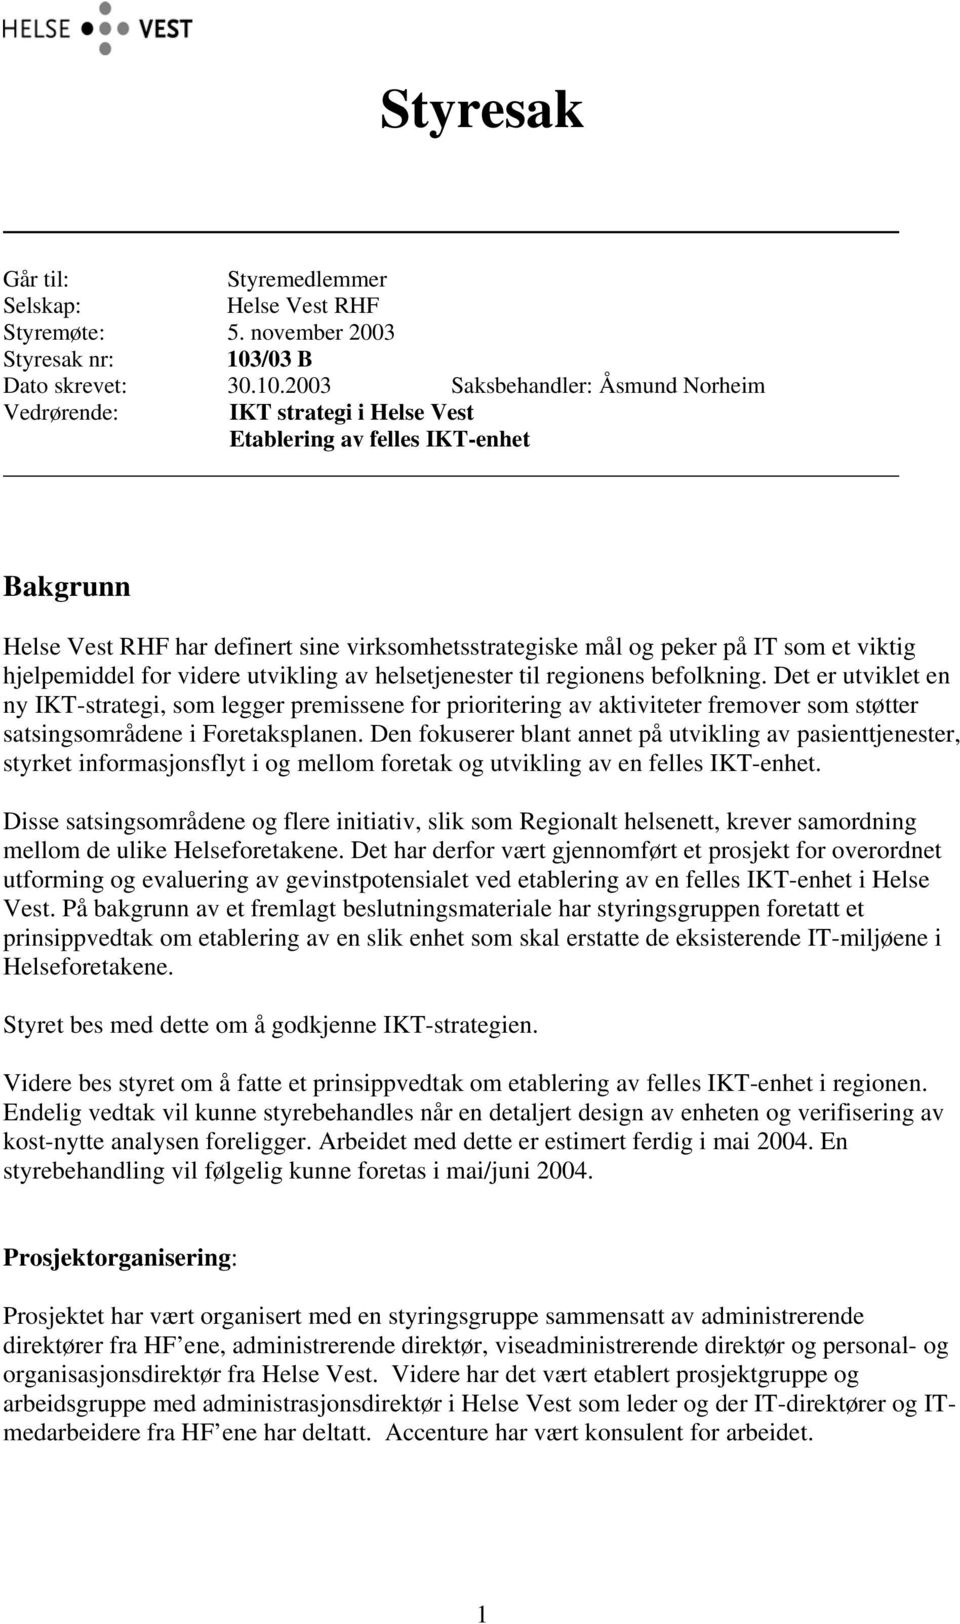 2003 Saksbehandler: Åsmund Norheim Vedrørende: IKT strategi i Helse Vest Etablering av felles IKT-enhet Bakgrunn Helse Vest R har definert sine virksomhetsstrategiske mål og peker på IT som et viktig